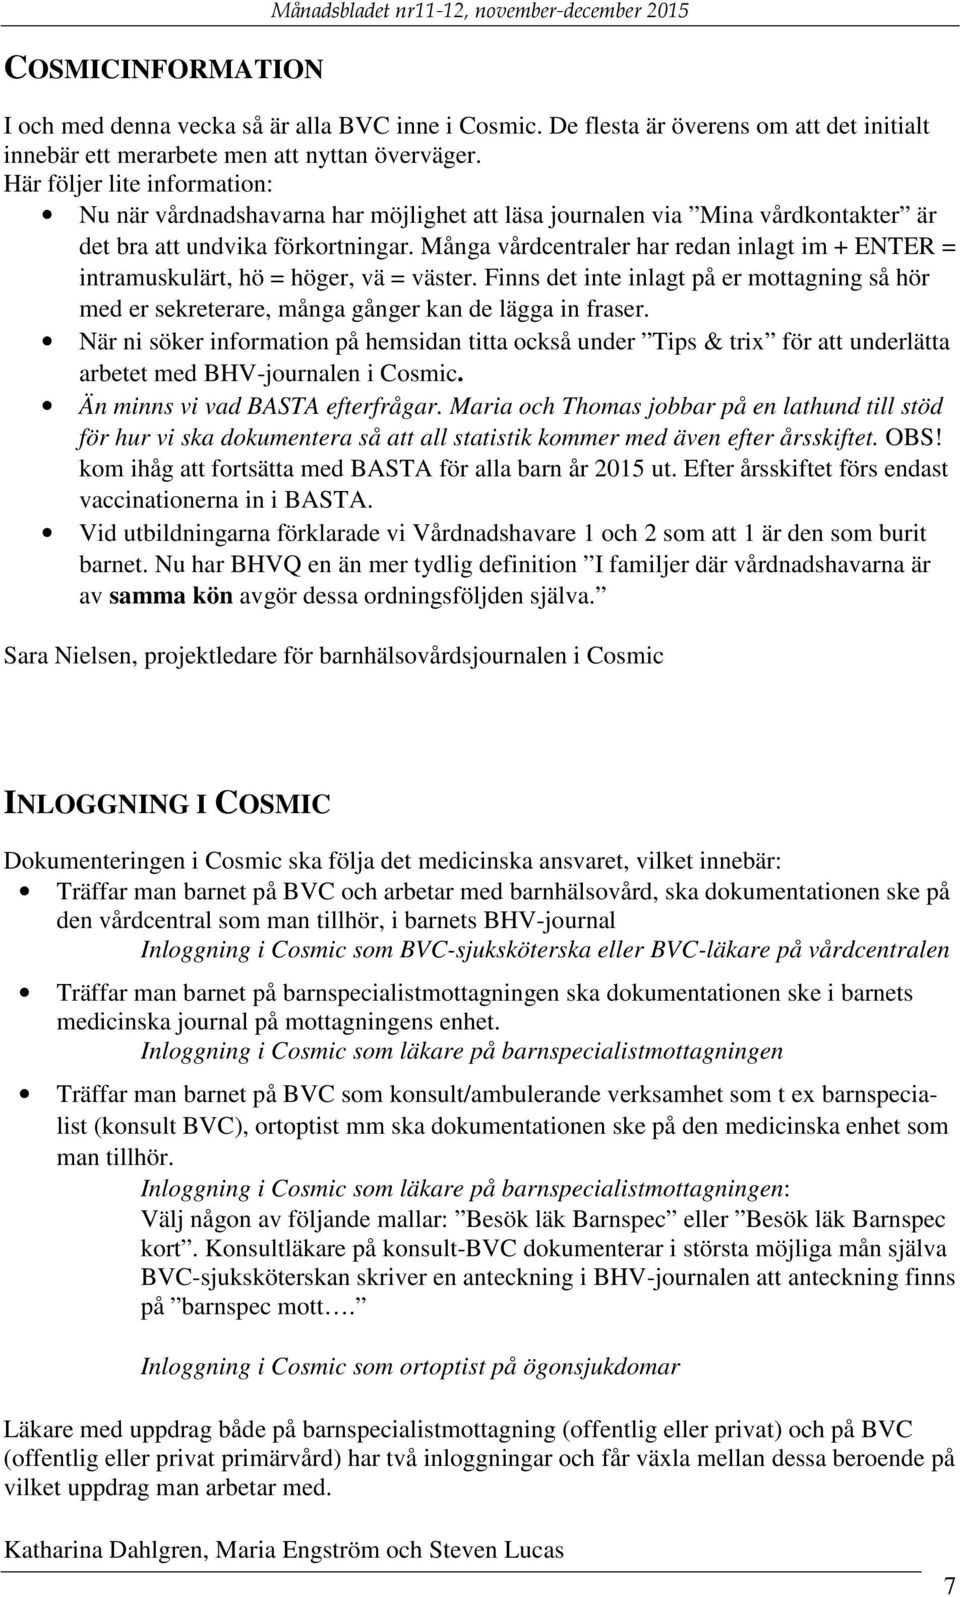 Månadsbladet JULHÄLSNING. nr 11-12, november-december PDF Free Download